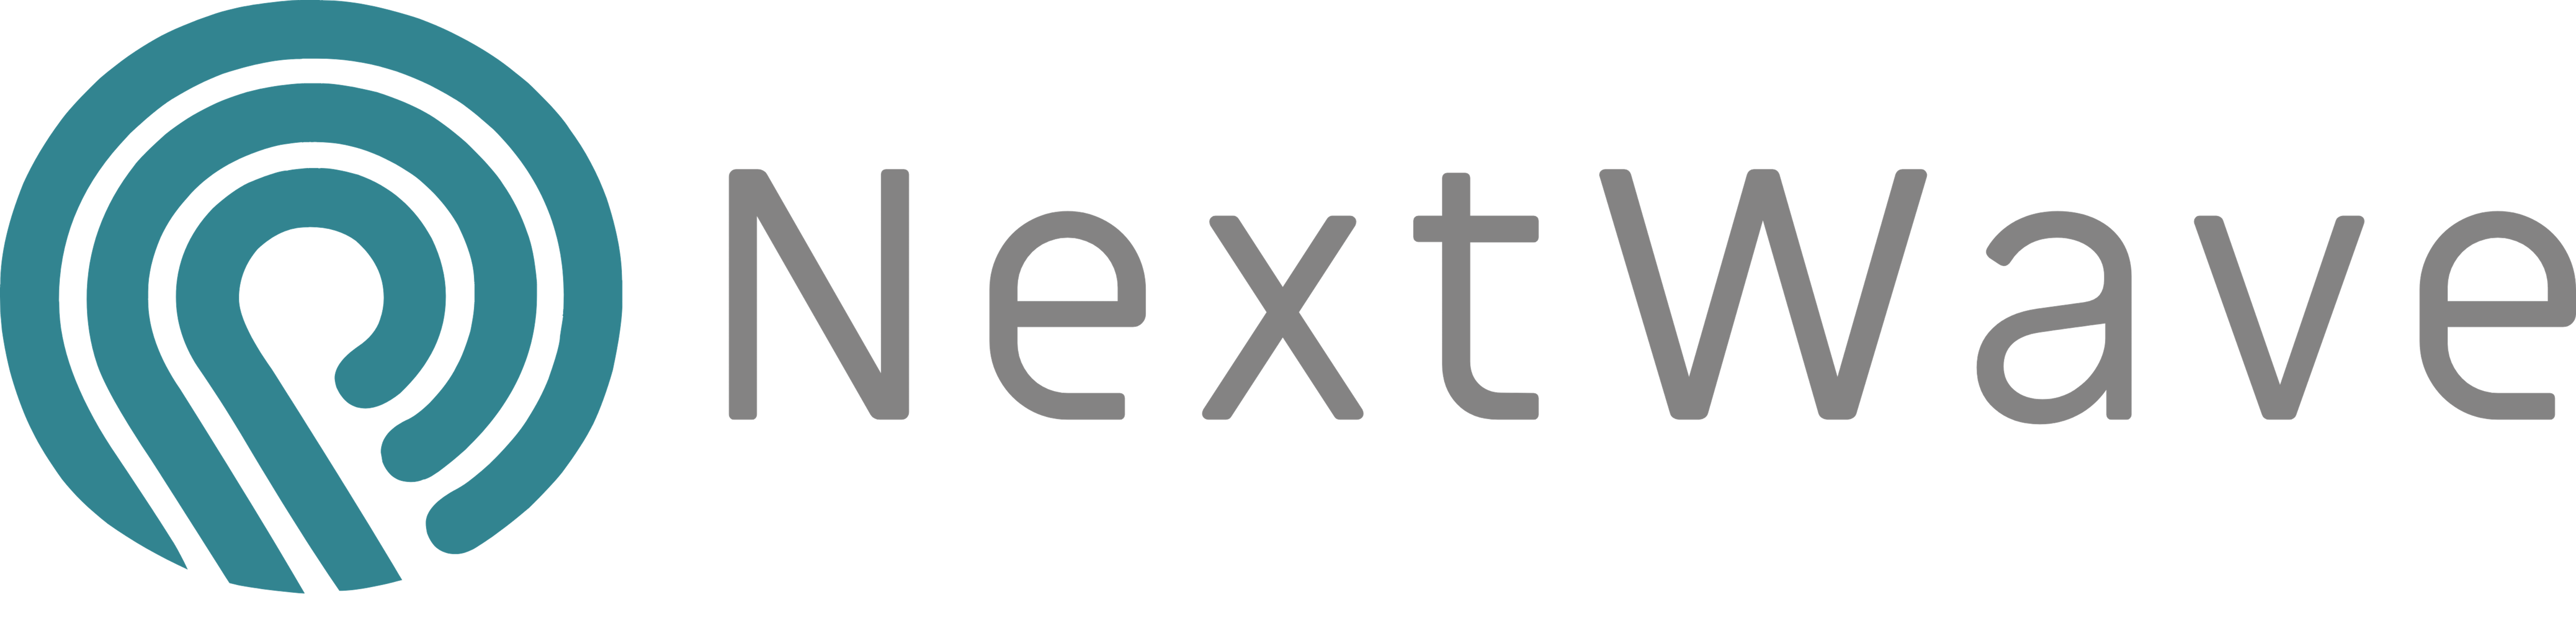 NextWave logo